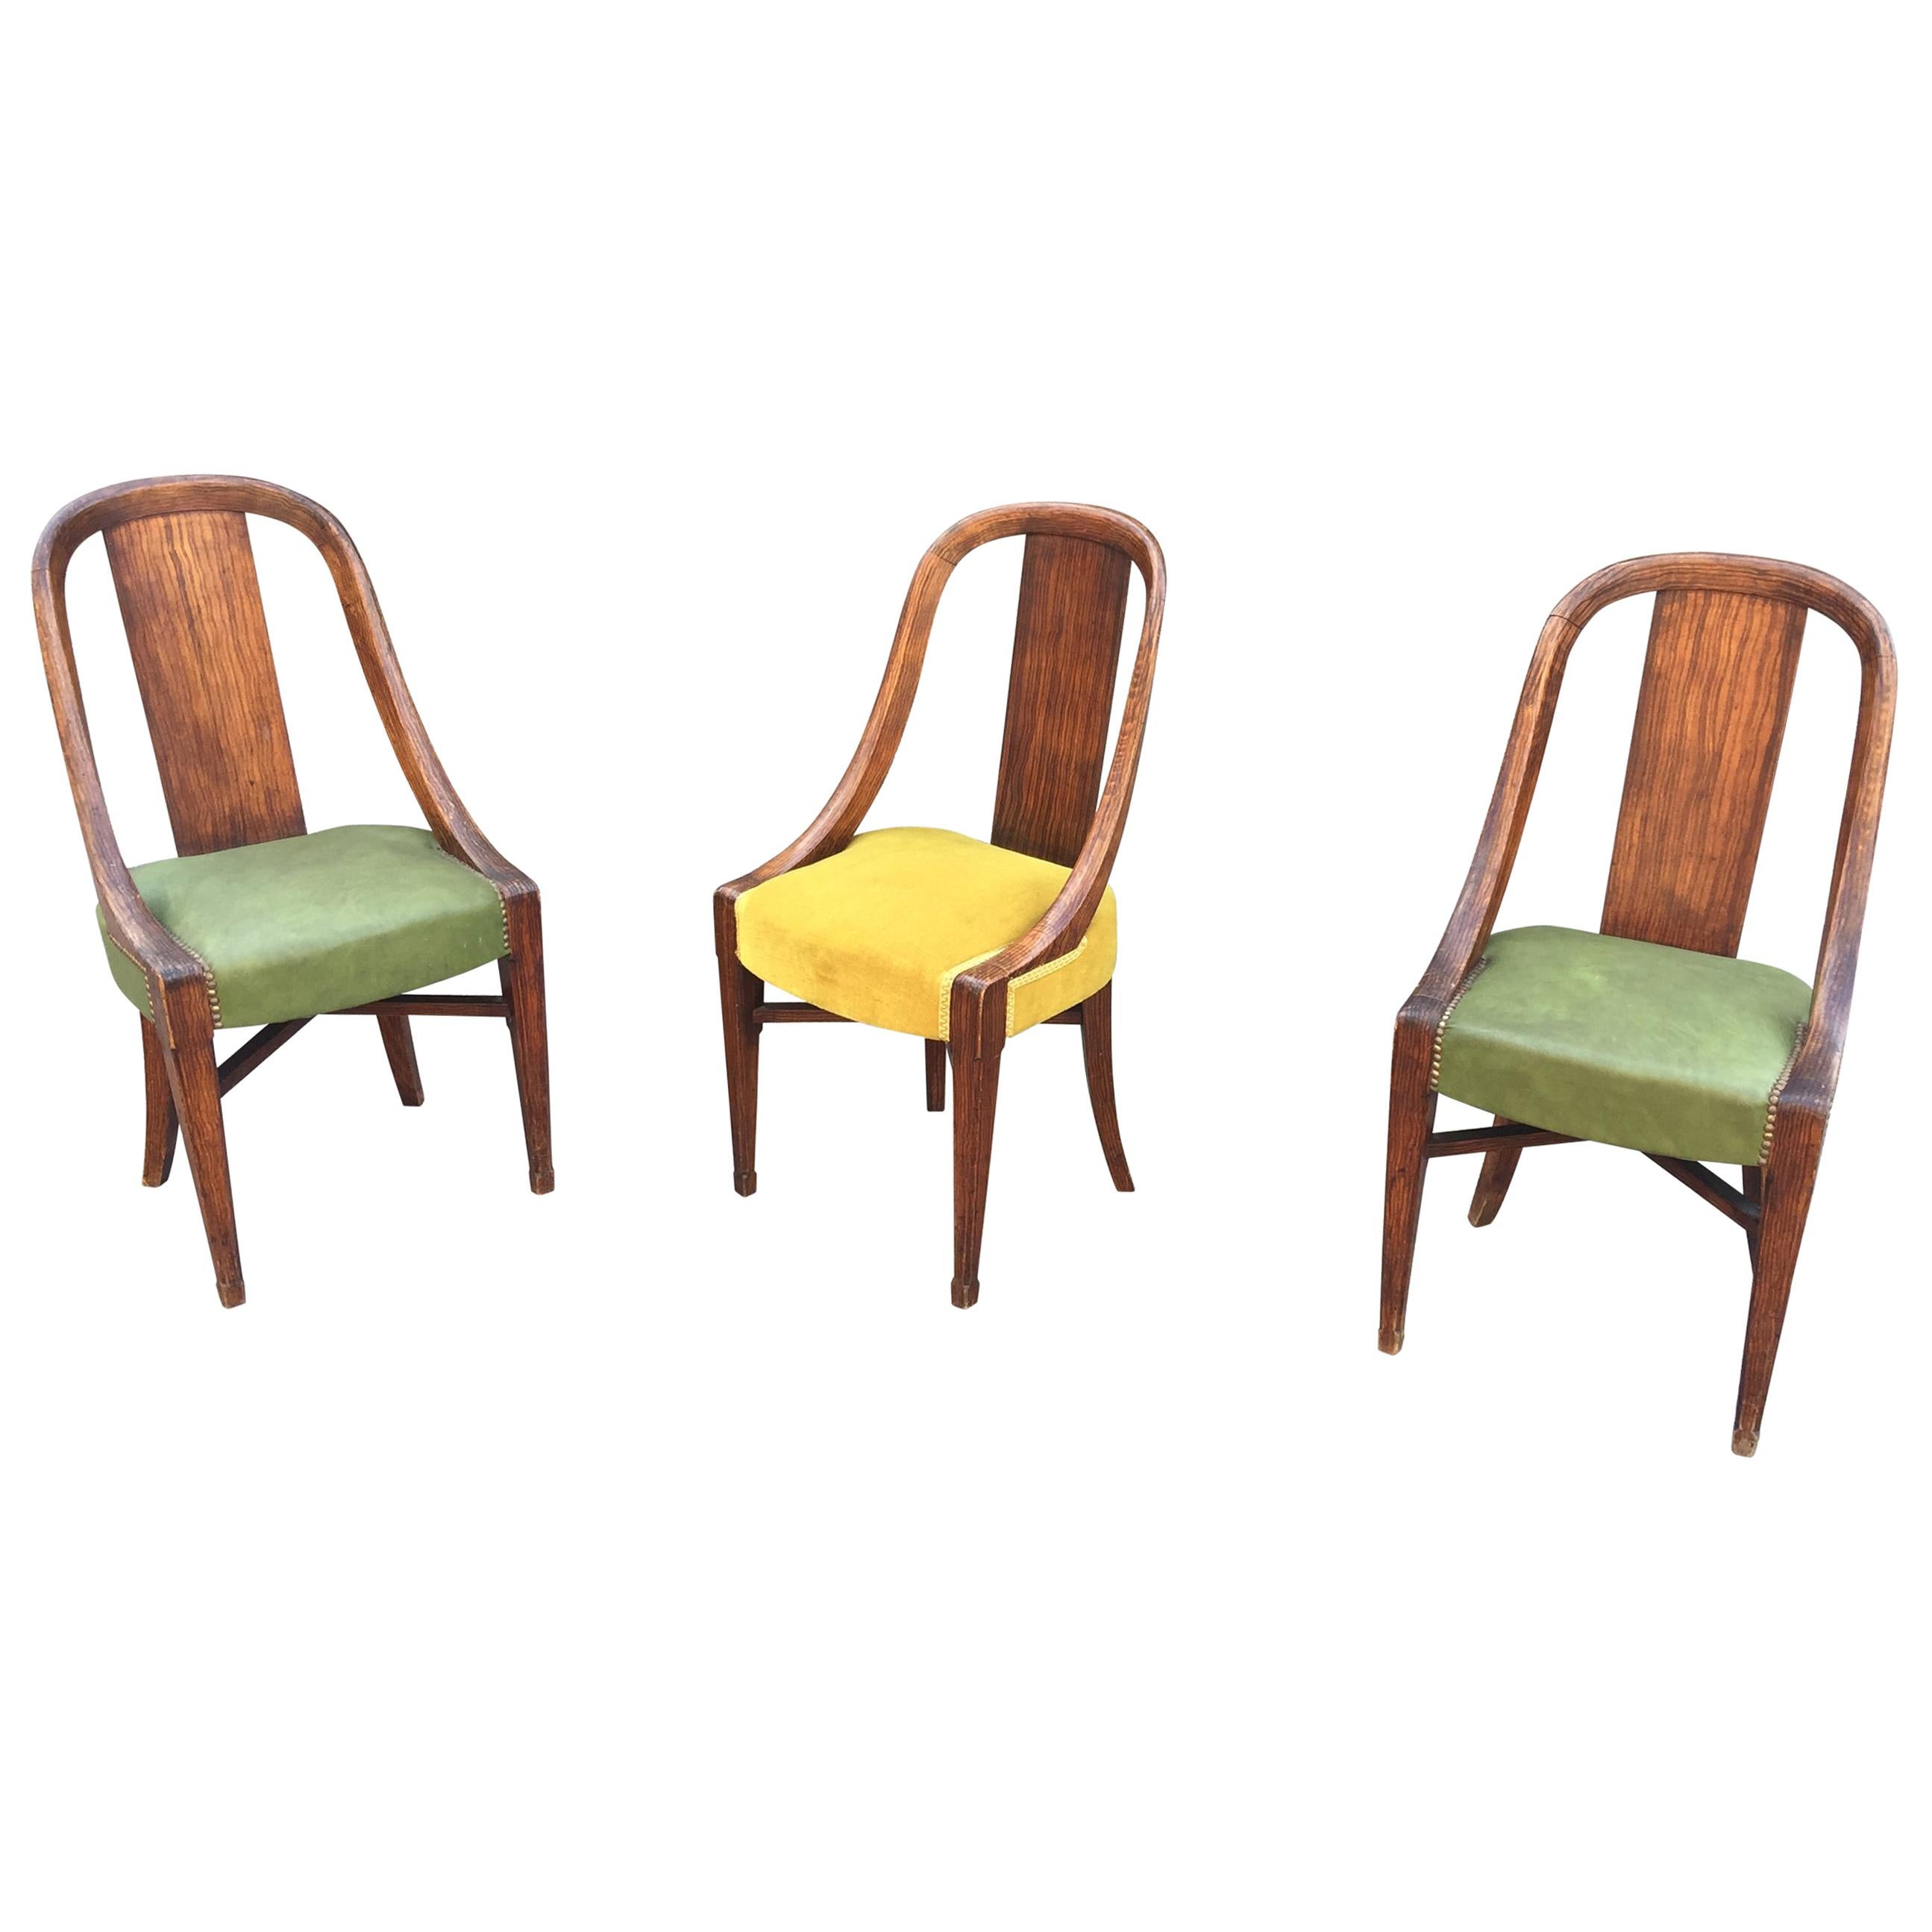 Trois chaises Art Déco, décor en faux bois peint sur bois, vers 1925